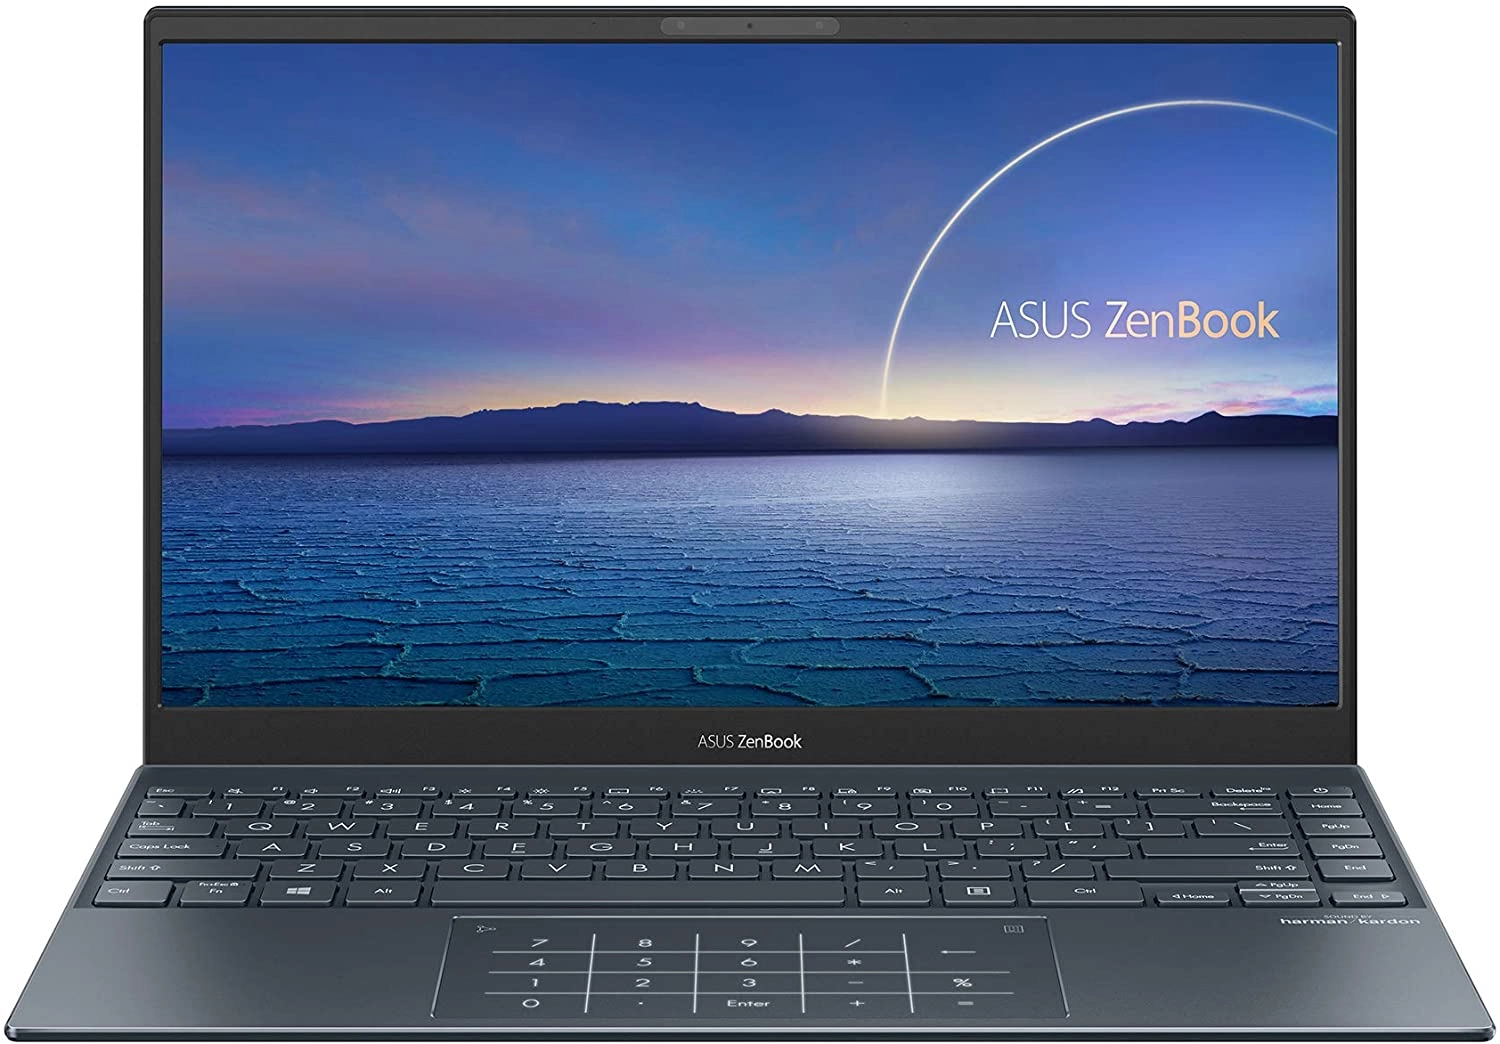 Asus UX325EA-KG245T laptop image